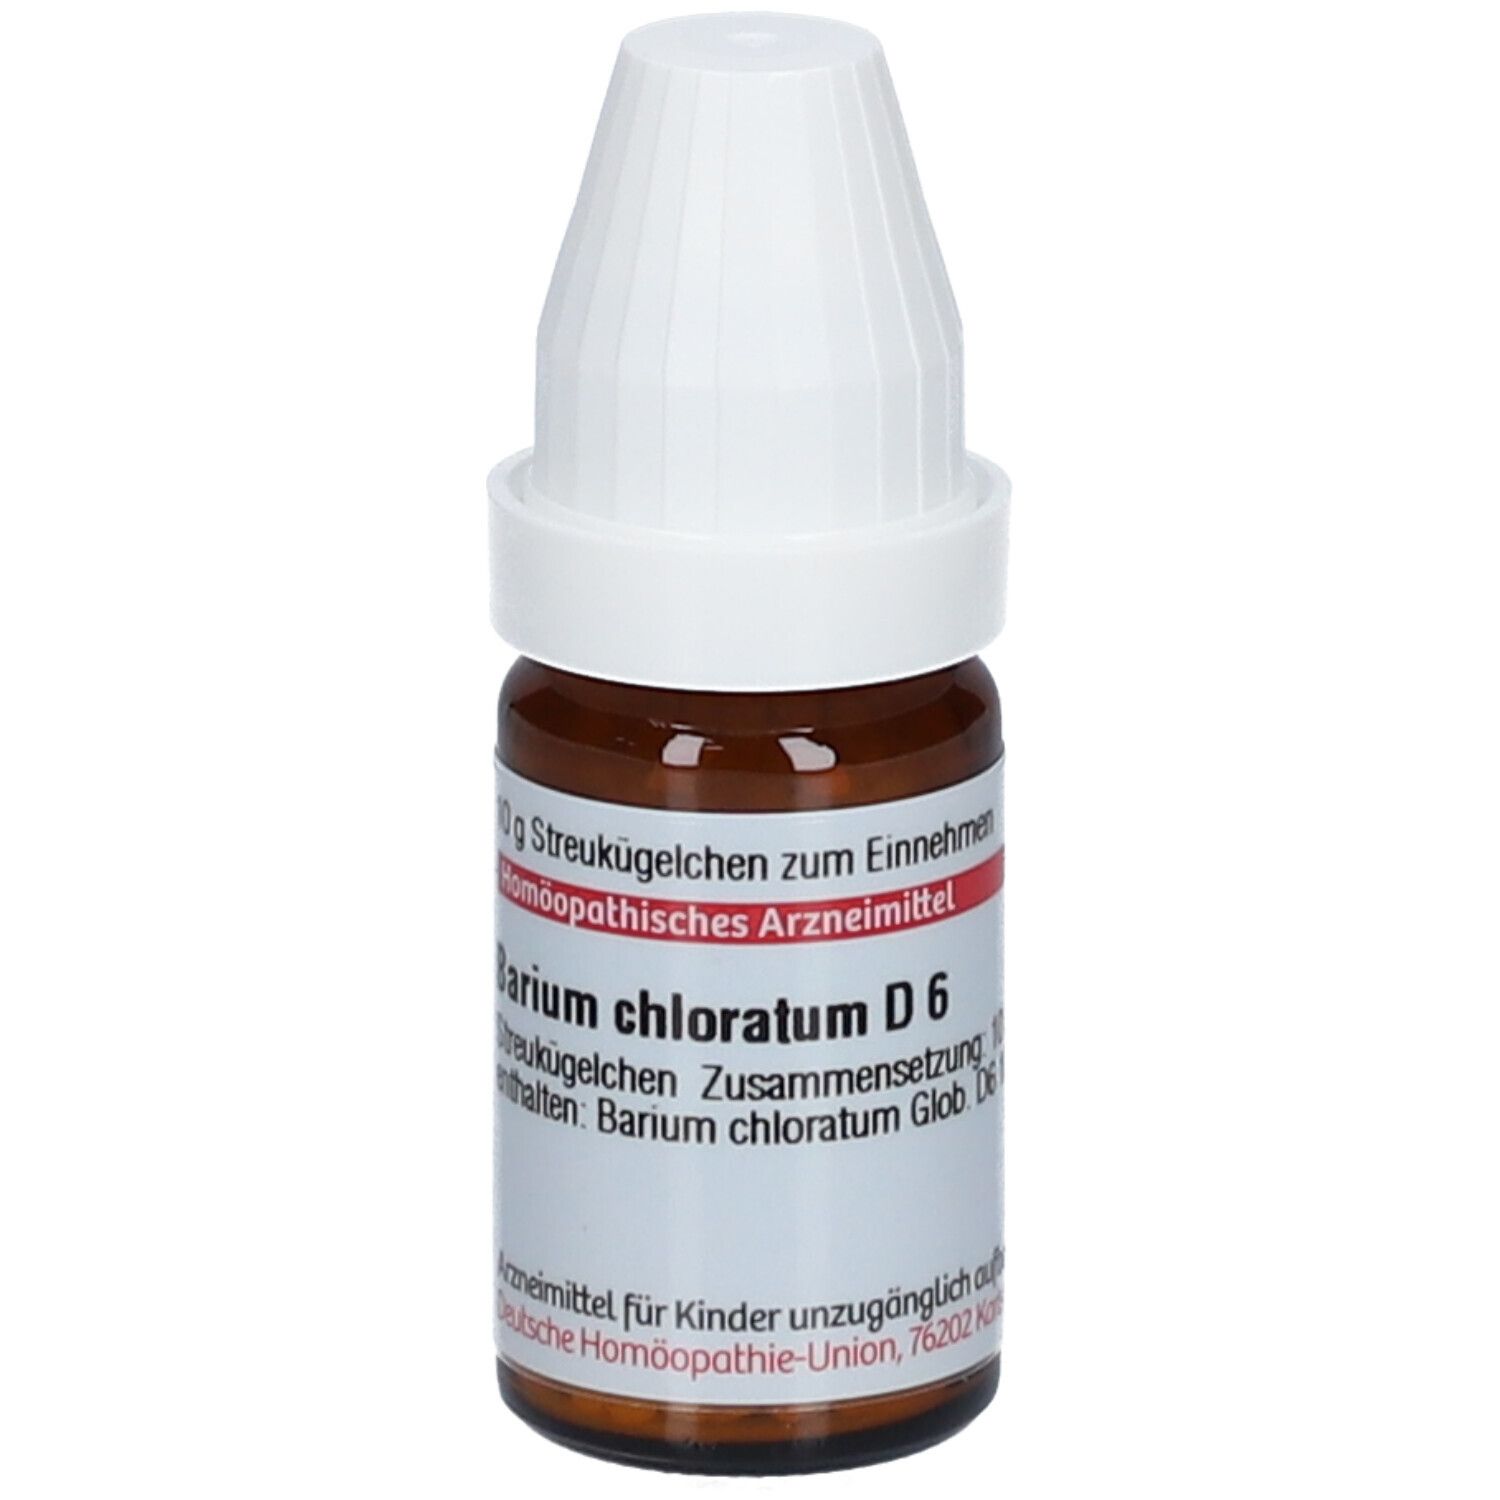 DHU Barium Chloratum D6